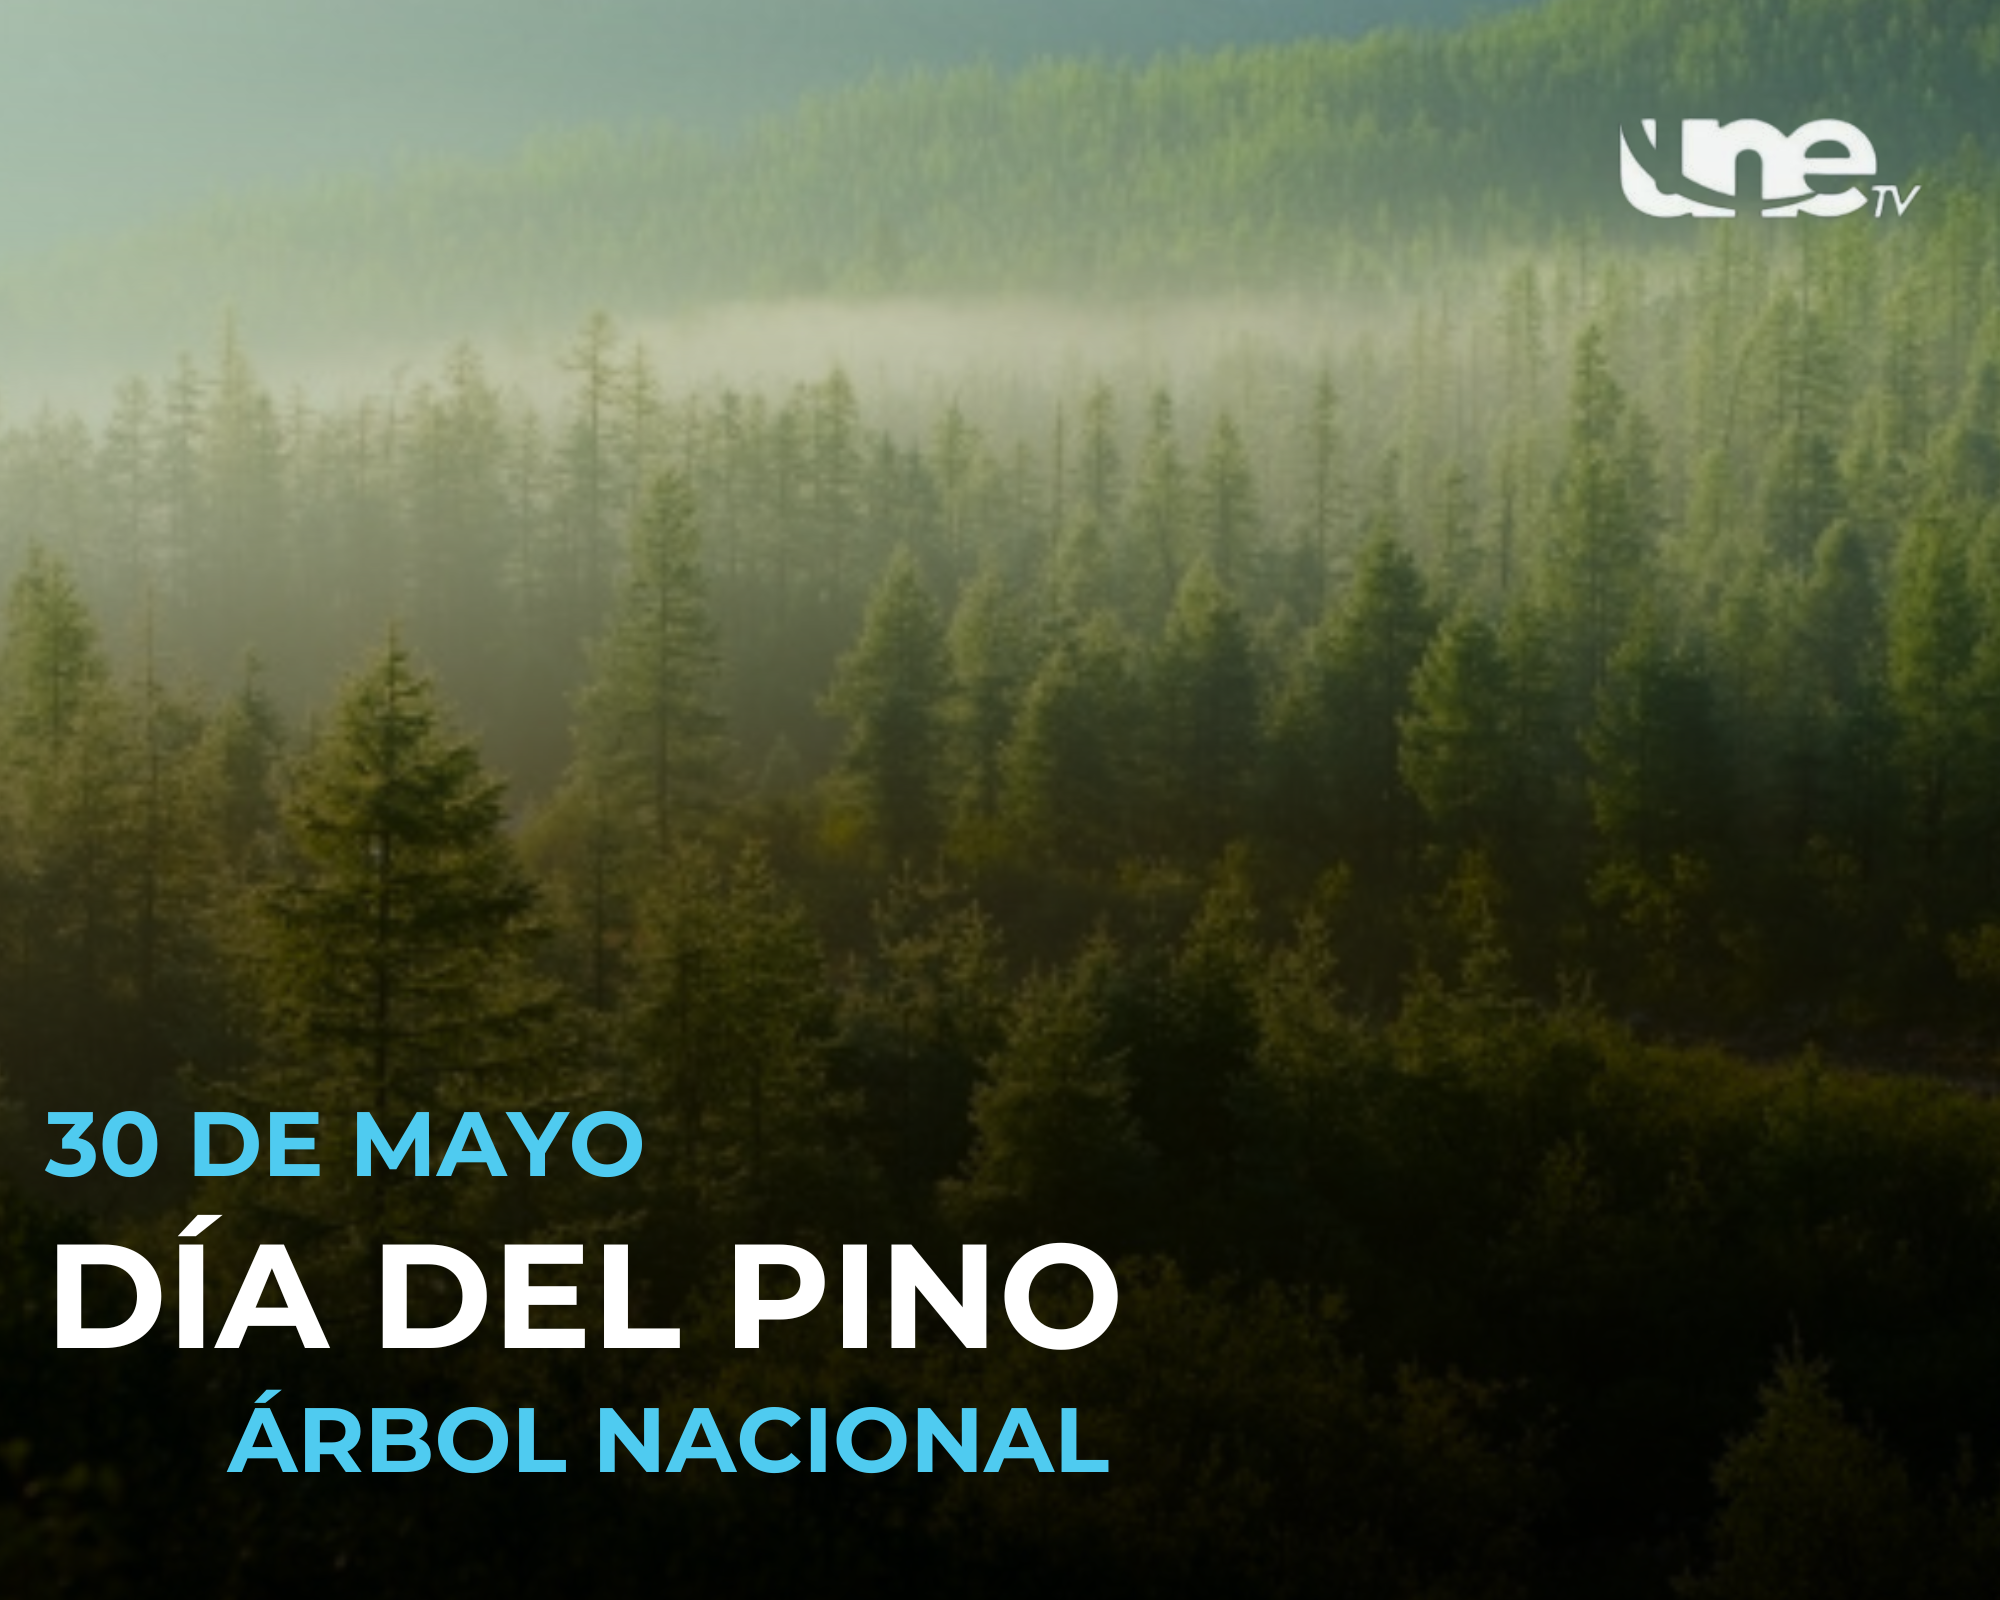 Celebremos el Día del Pino Árbol Nacional y preservemos nuestro entorno natural